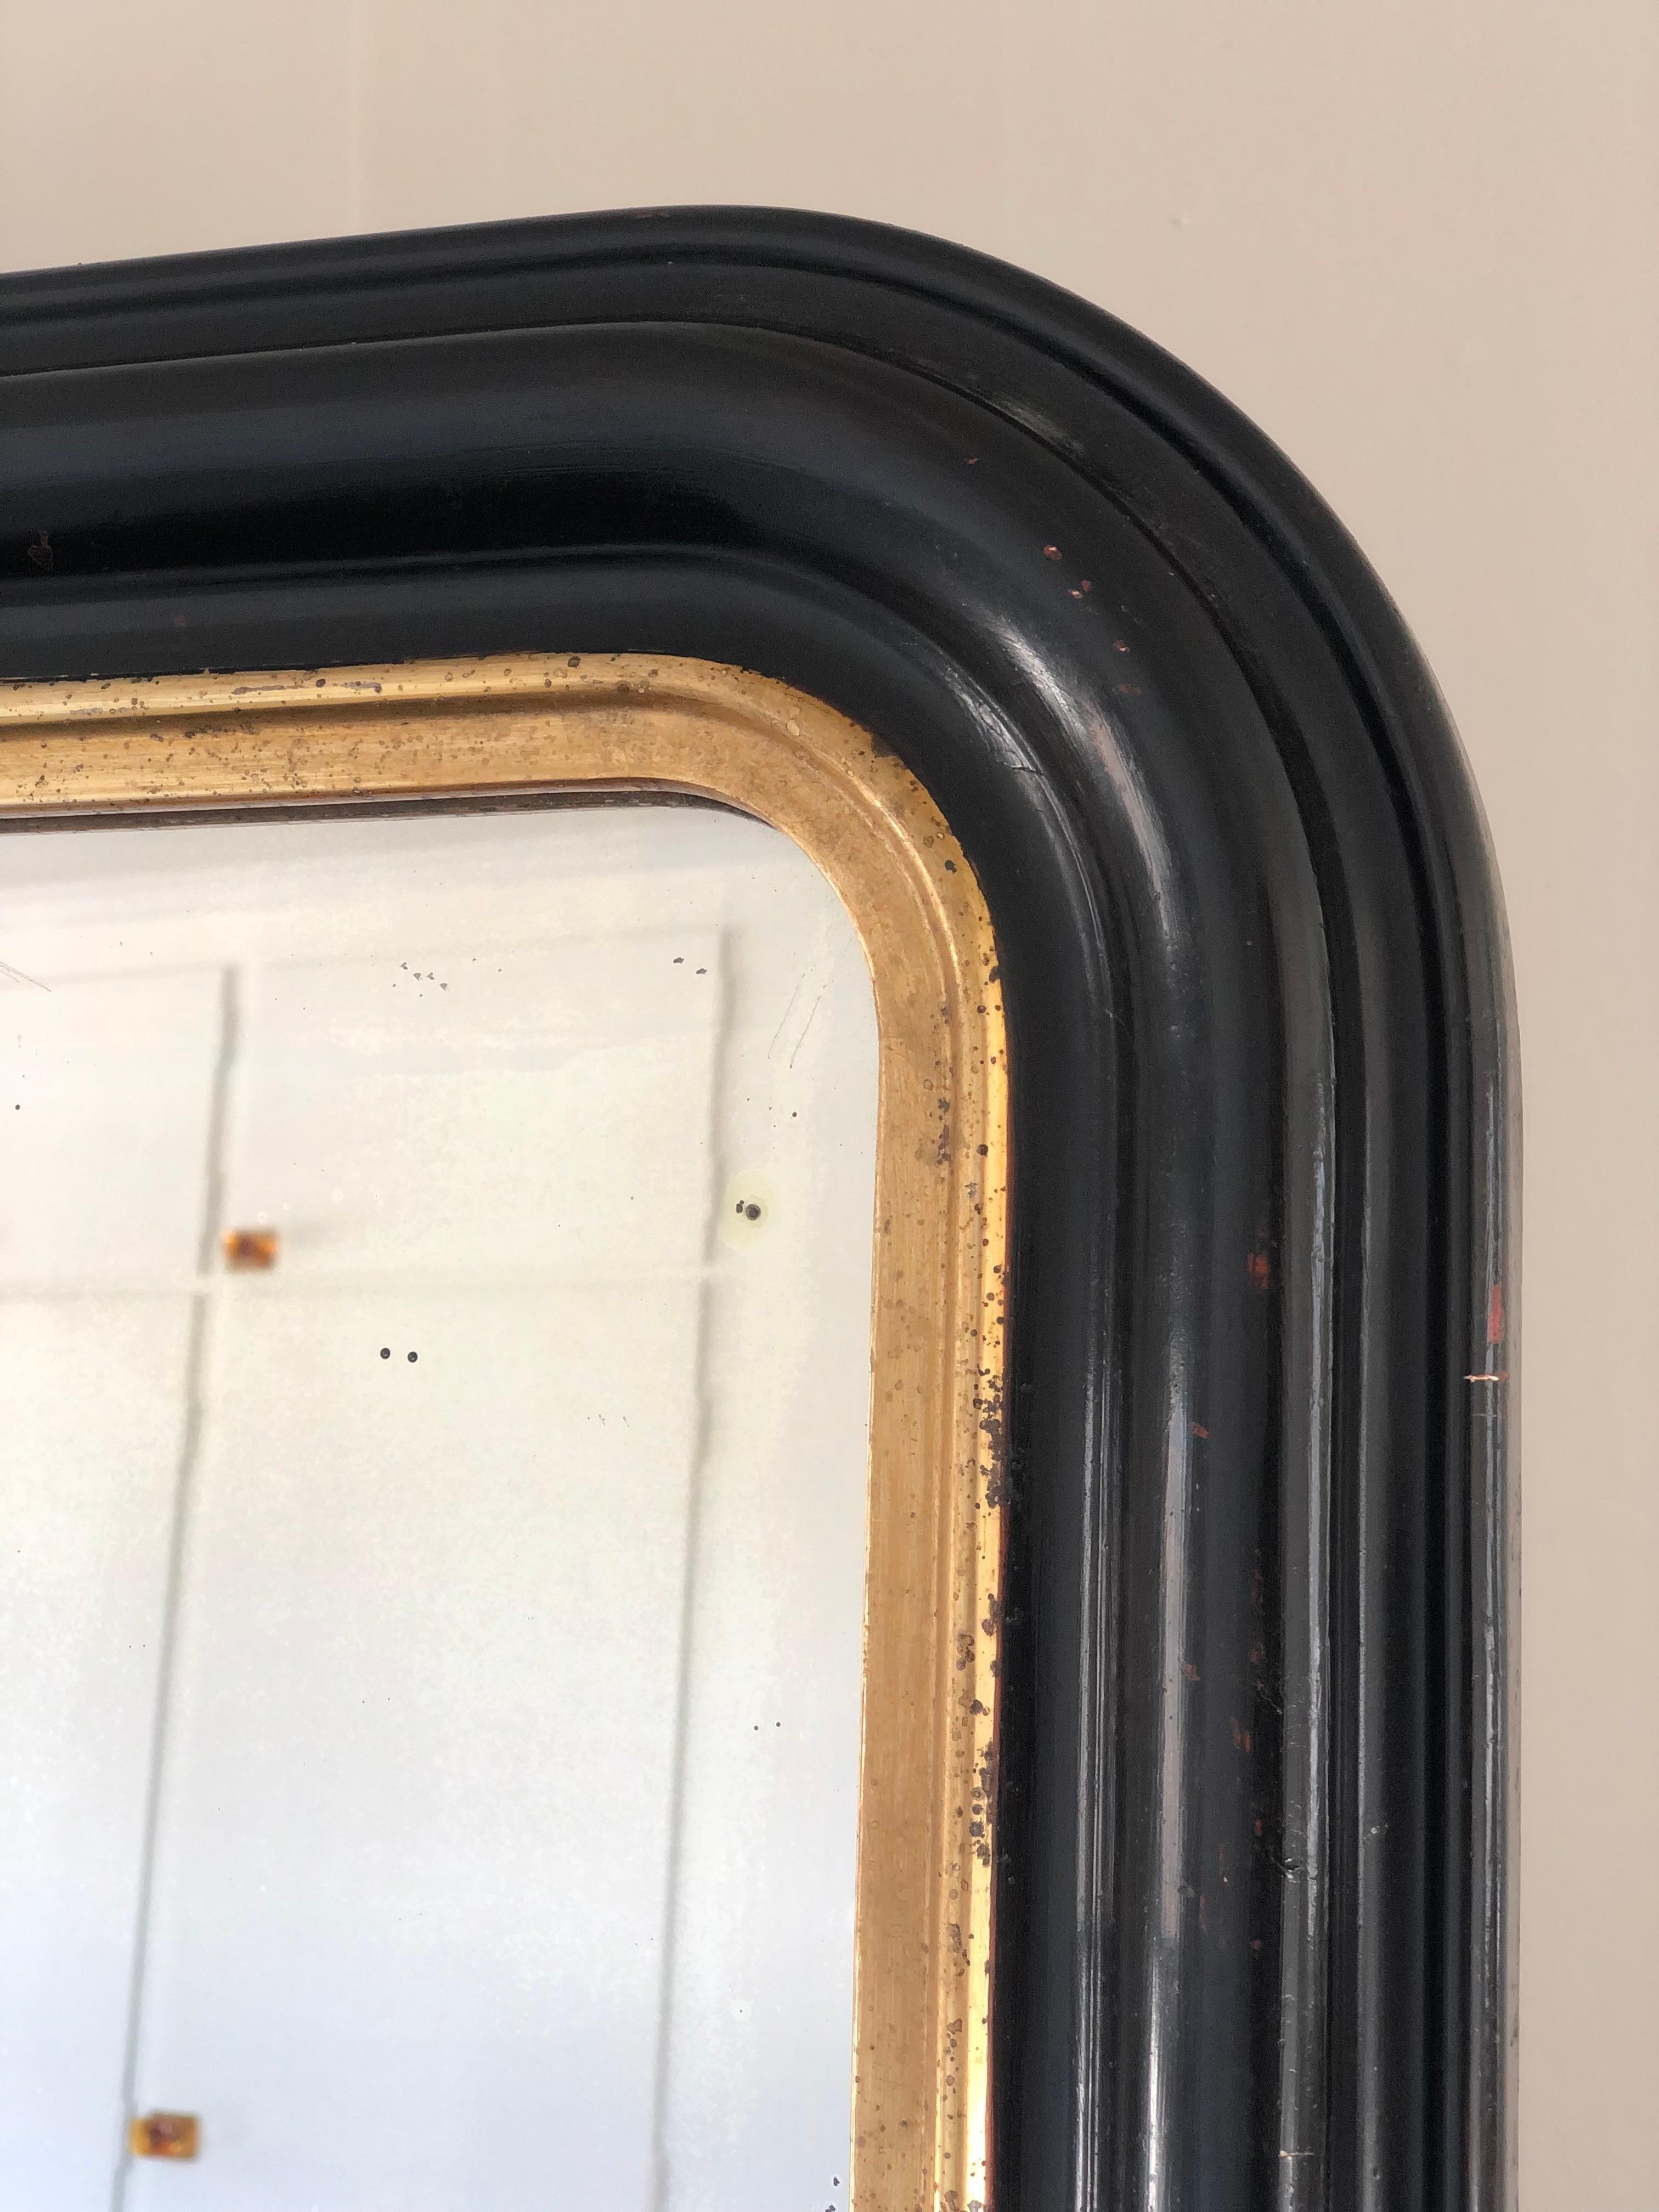 Miroir ancien Louis Philippe de très grande qualité, datant de la fin du 19e siècle et provenant de France. Une apparition avec grandeur. Le cadre richement sculpté avec des coins supérieurs incurvés en noir a un bord en bois doré. Verre de mercure